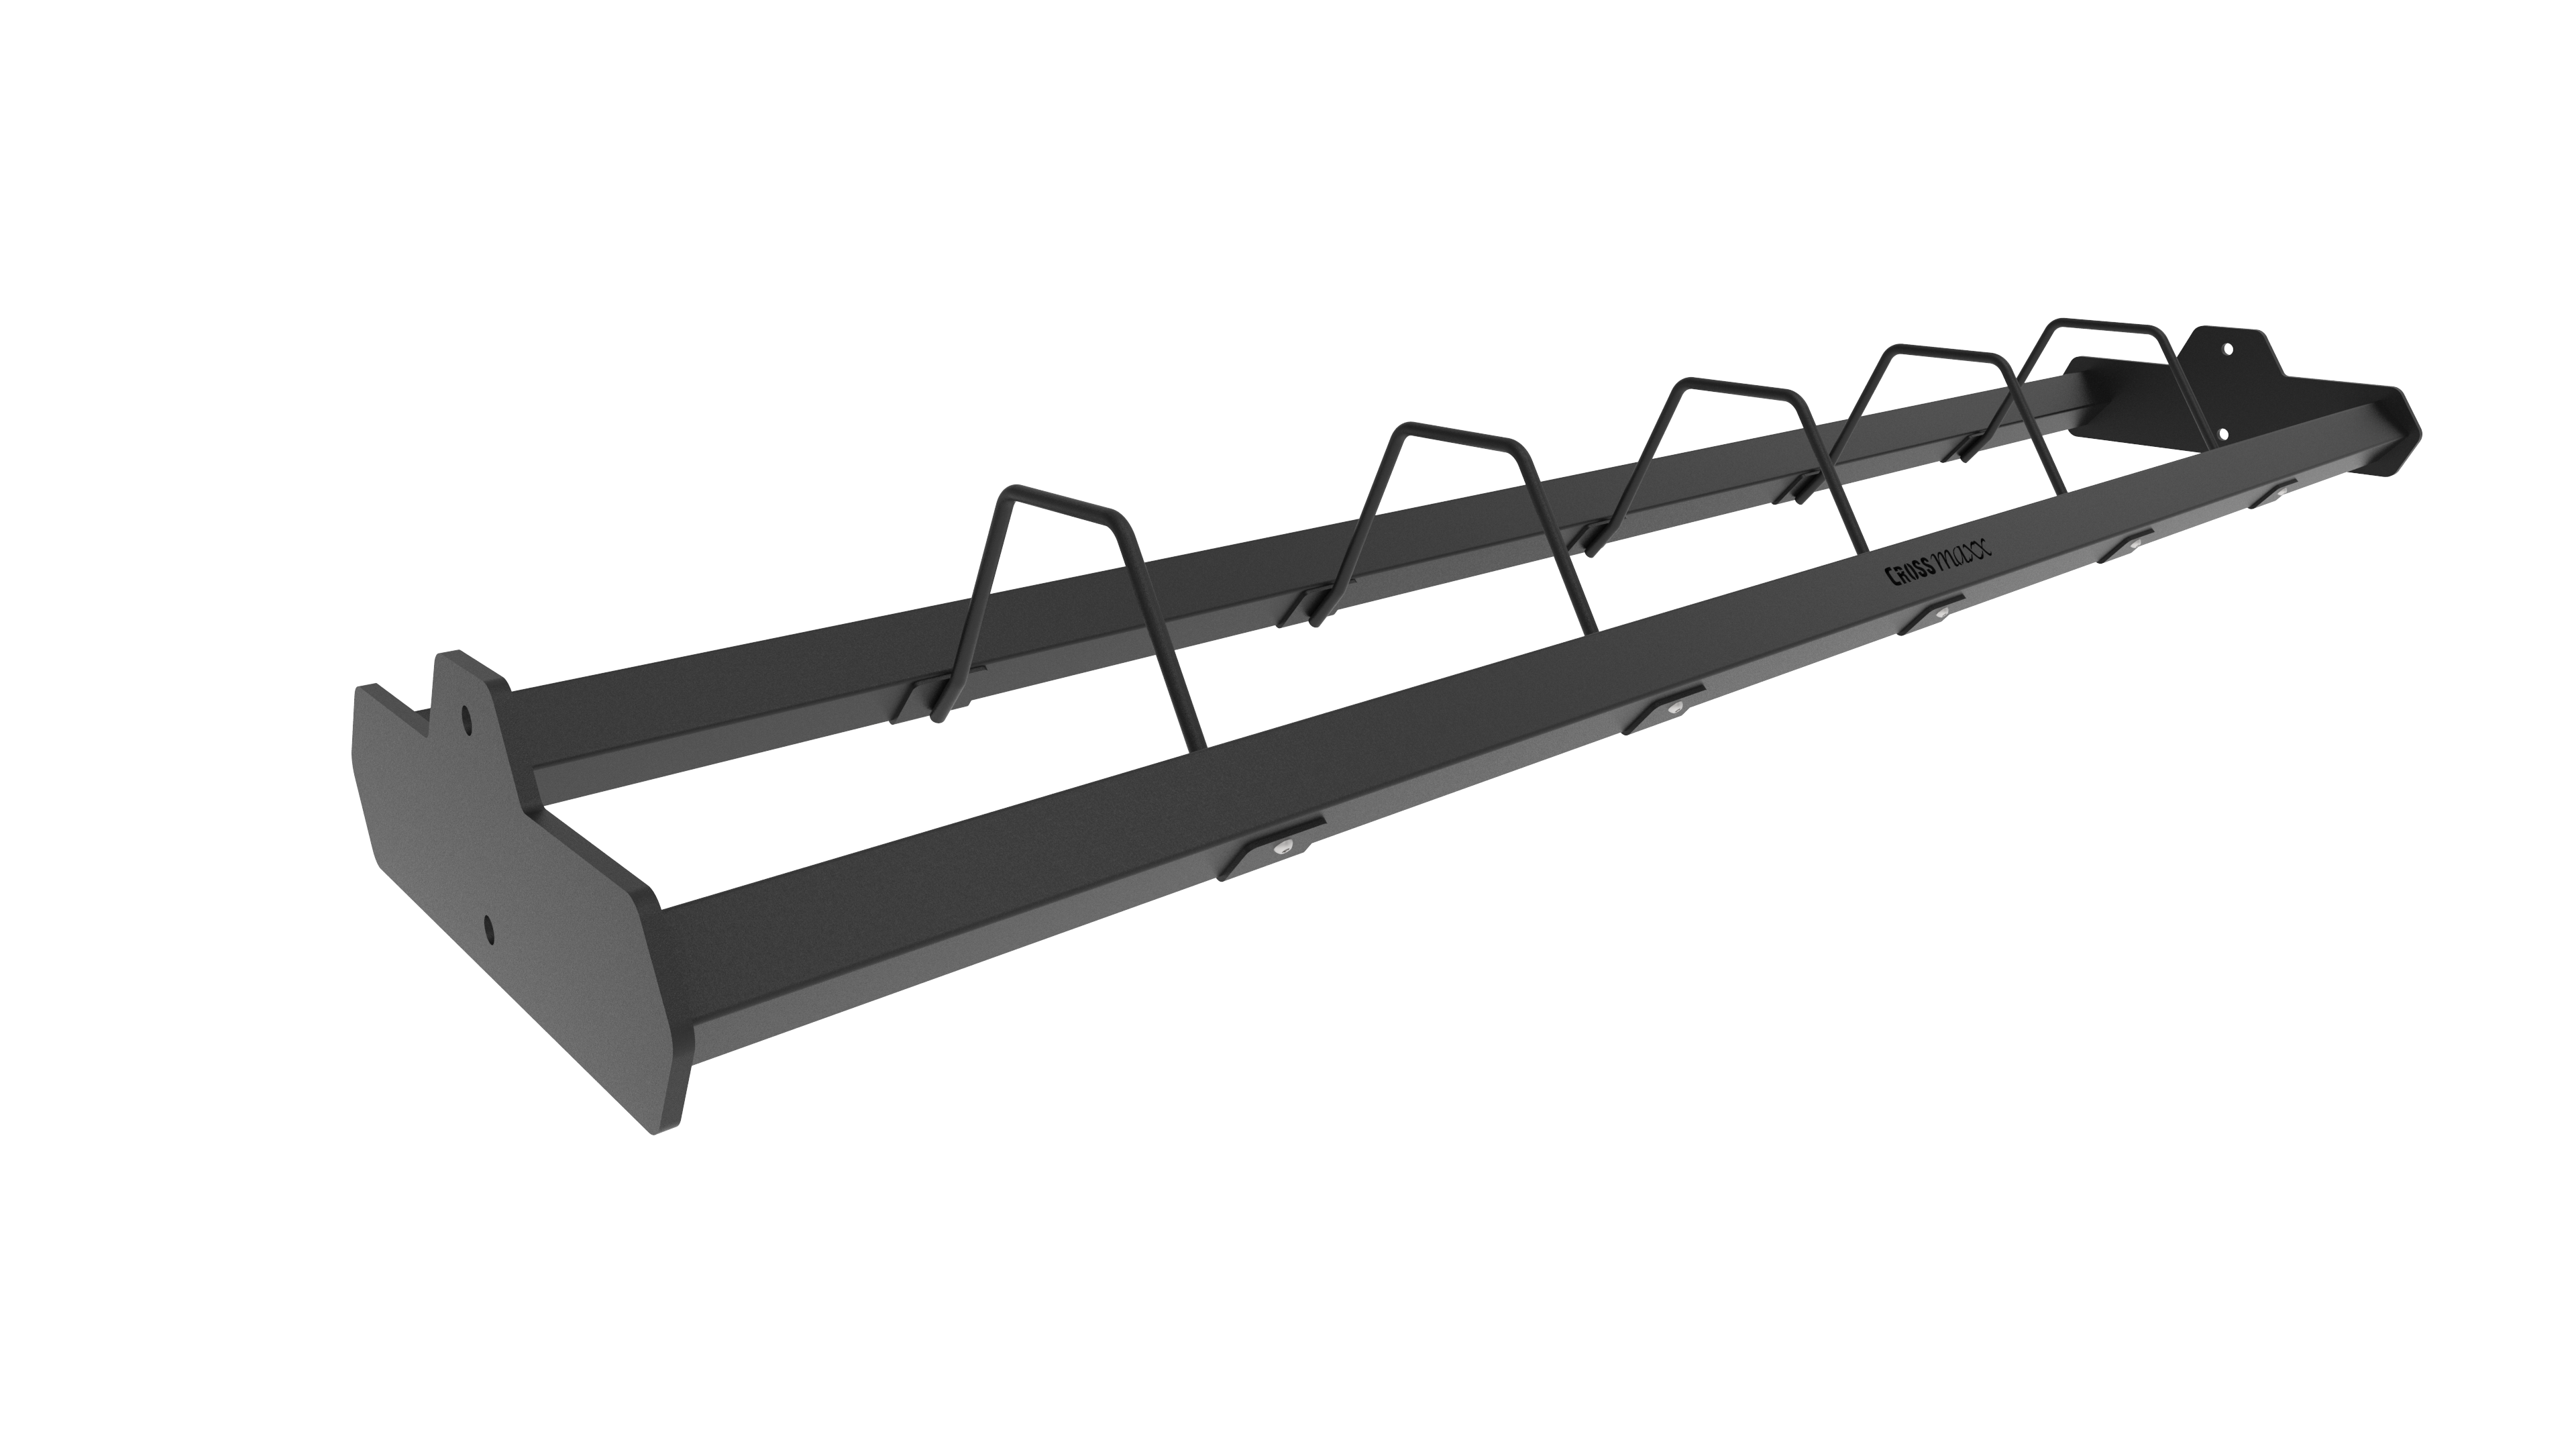 Brug Crossmaxx XL Plate Shelf 180 cm - opbevaring til rigs til en forbedret oplevelse